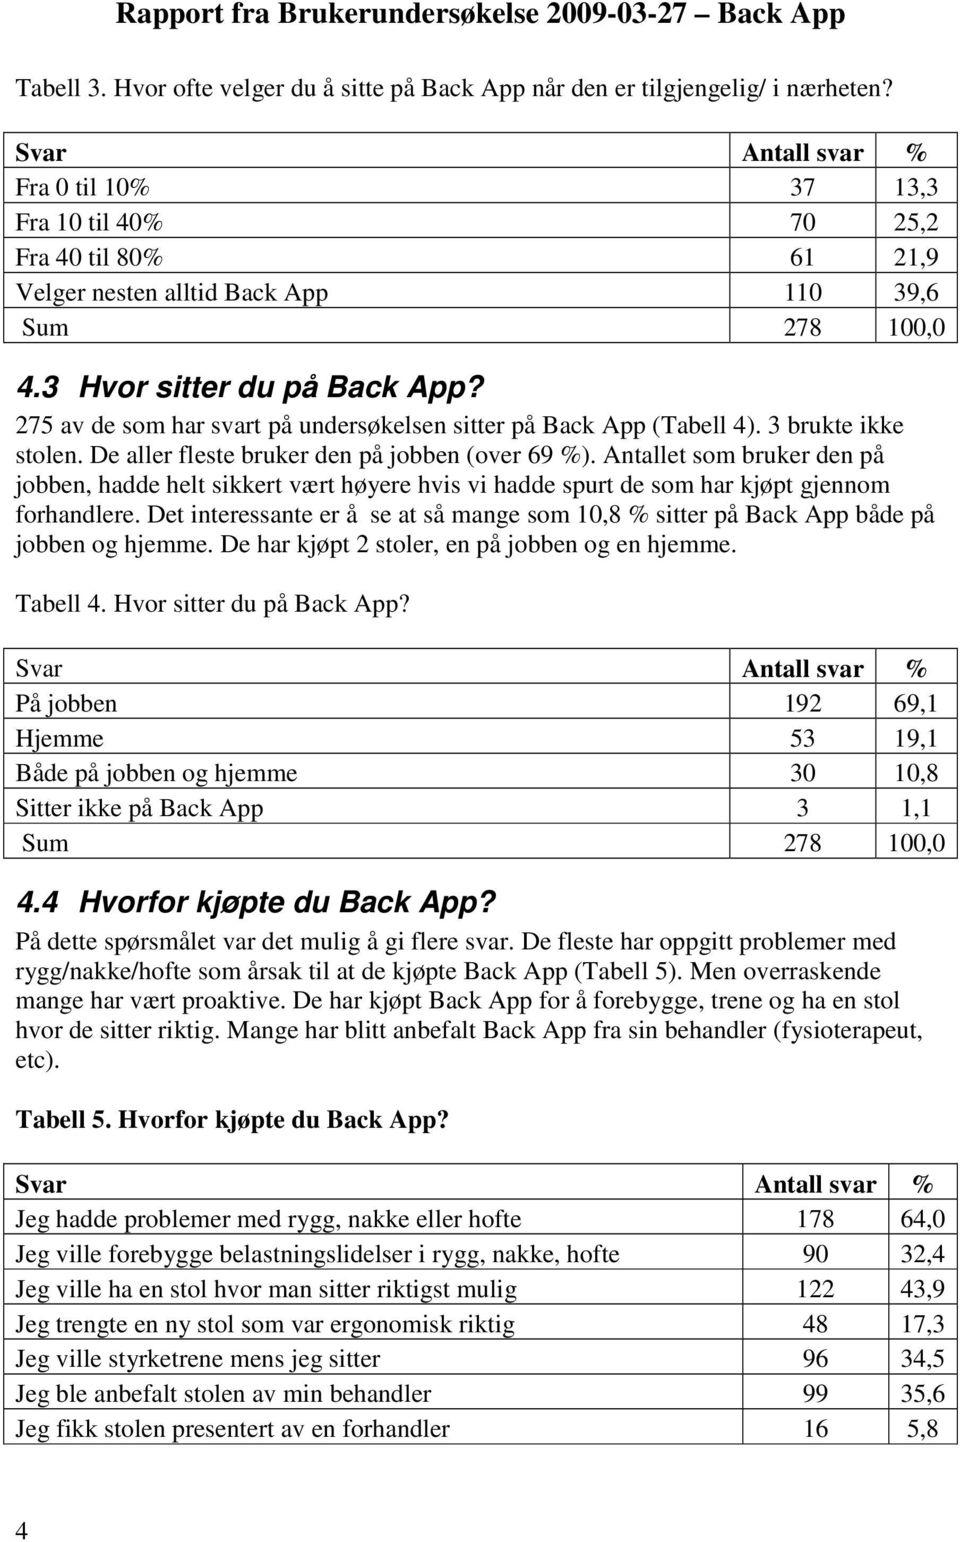 275 av de sm har svart på undersøkelsen sitter på Back App (Tabell 4). 3 brukte ikke stlen. De aller fleste bruker den på jbben (ver 69 %).